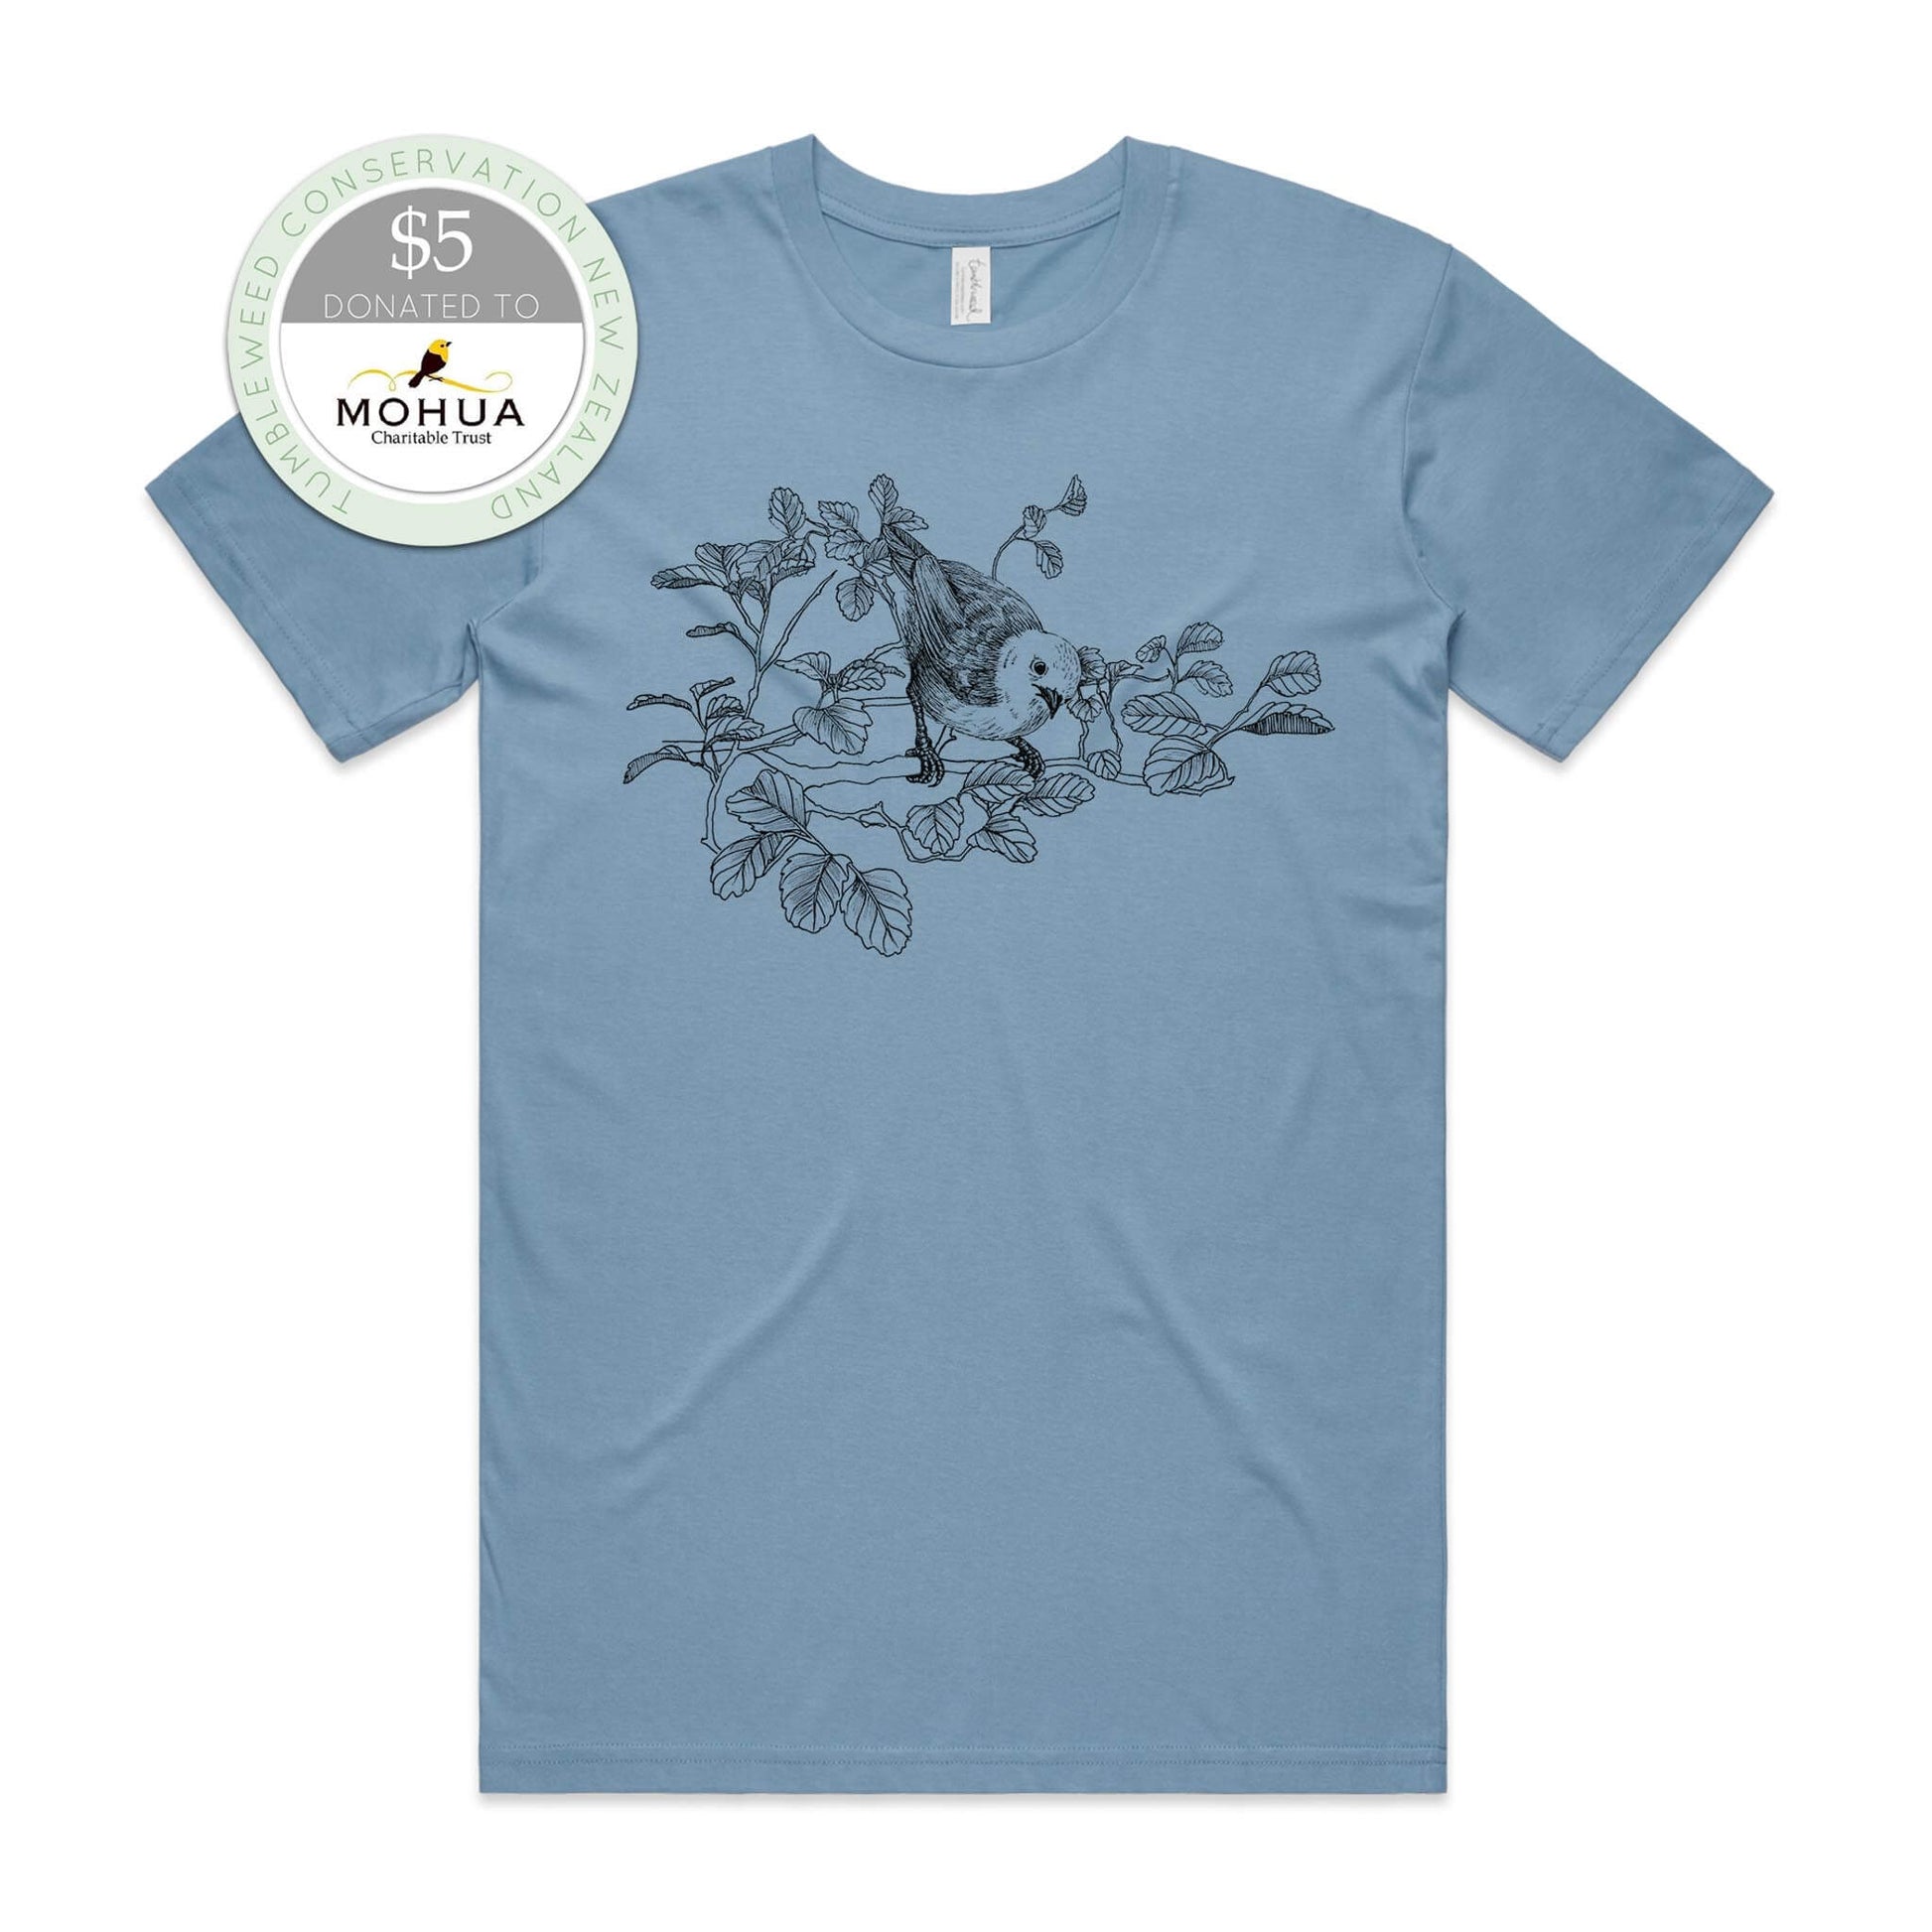 Sage, female t-shirt featuring a screen printed Mōhua/Yellowhead design.